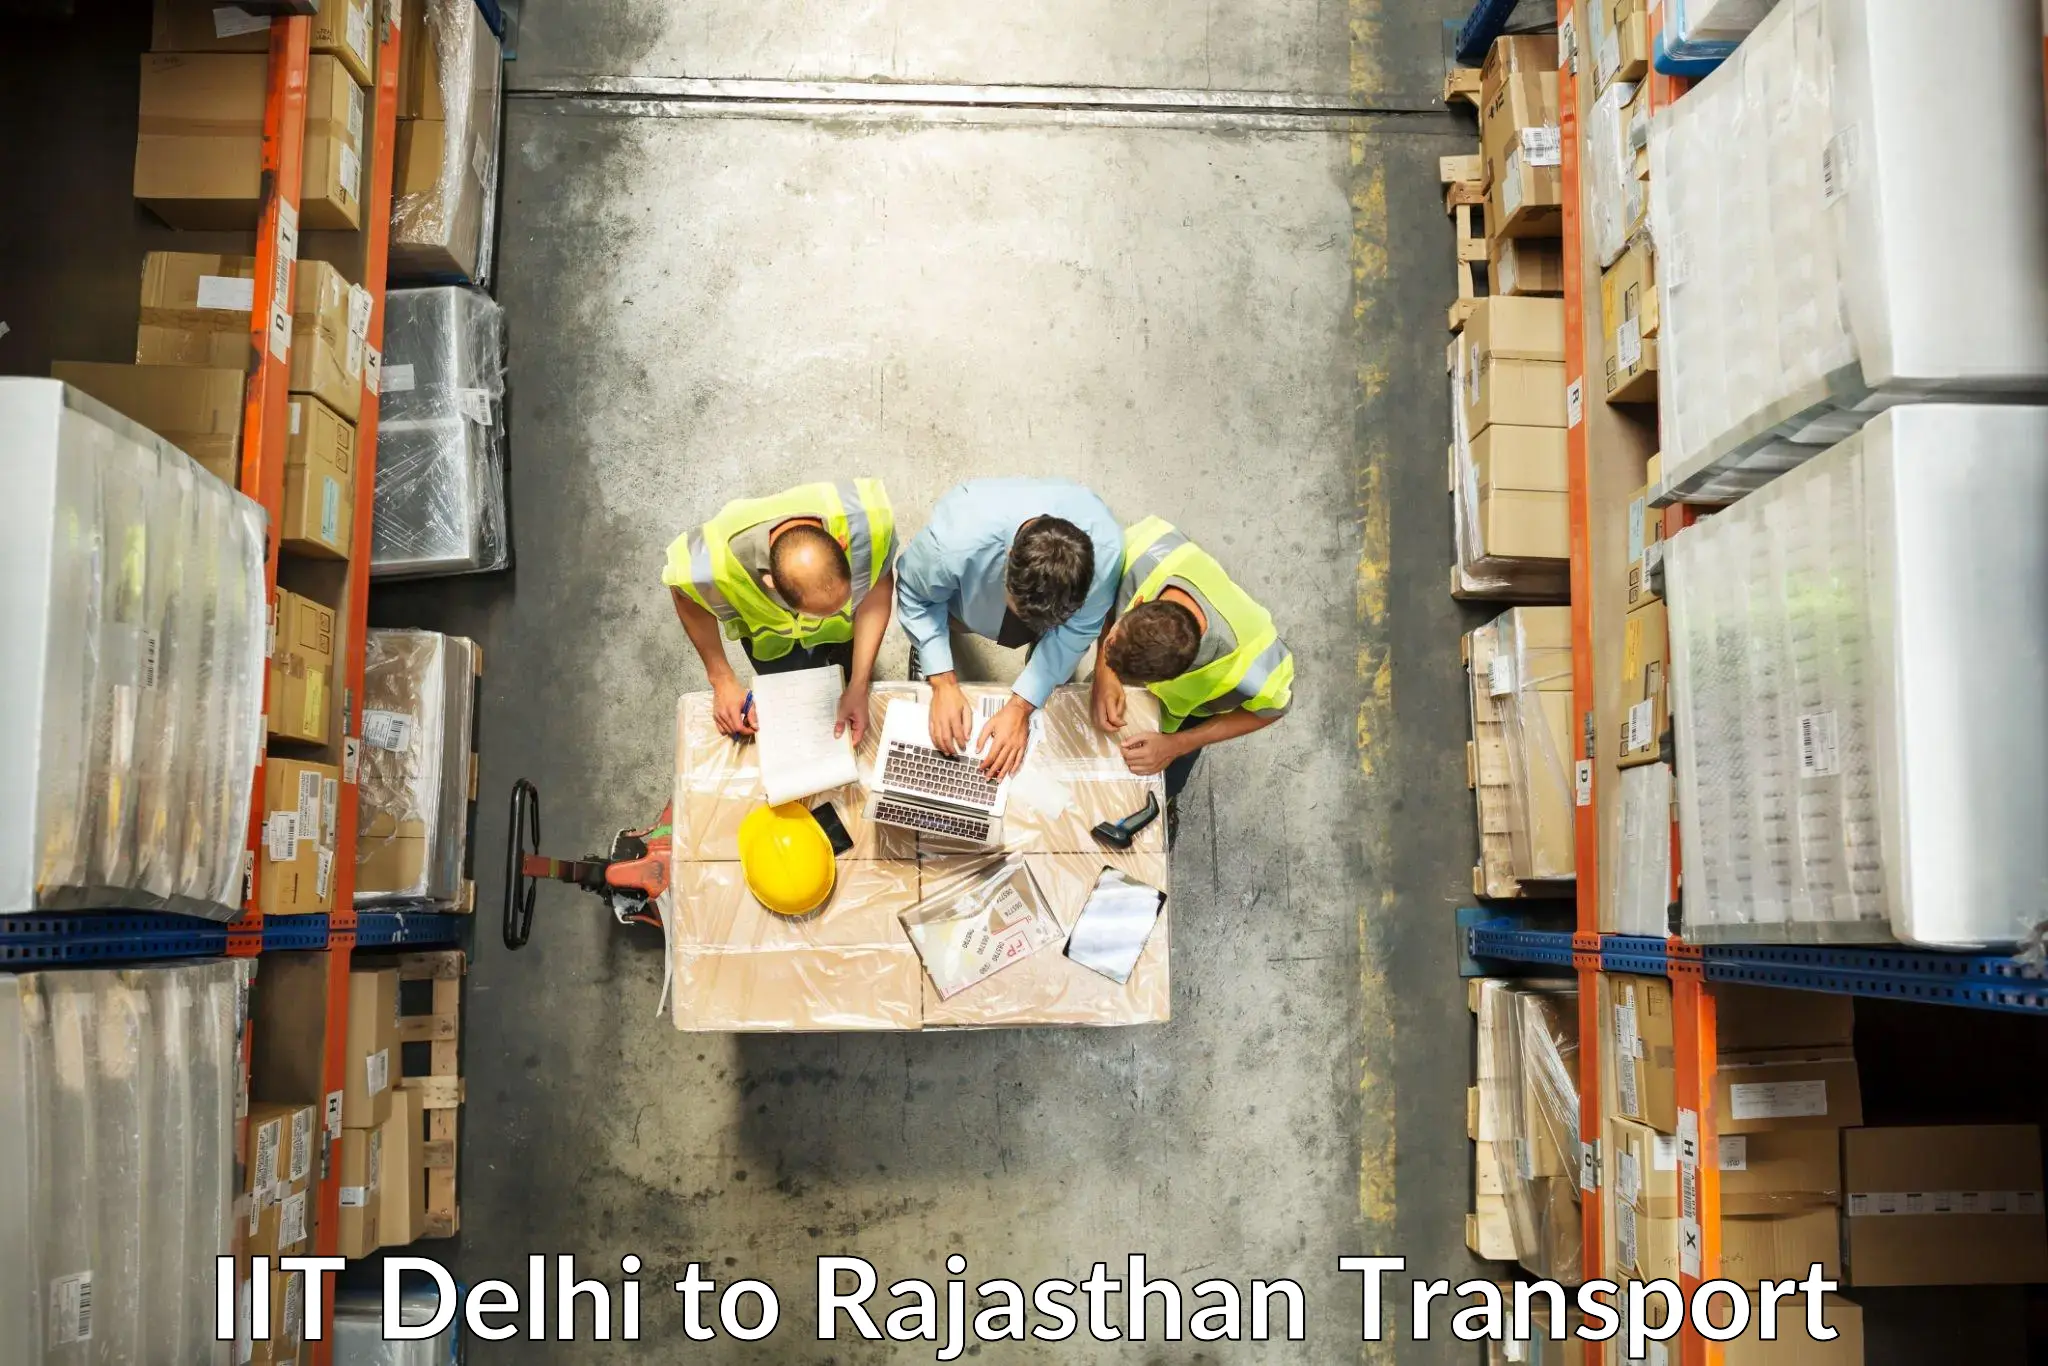 Delivery service IIT Delhi to Baran